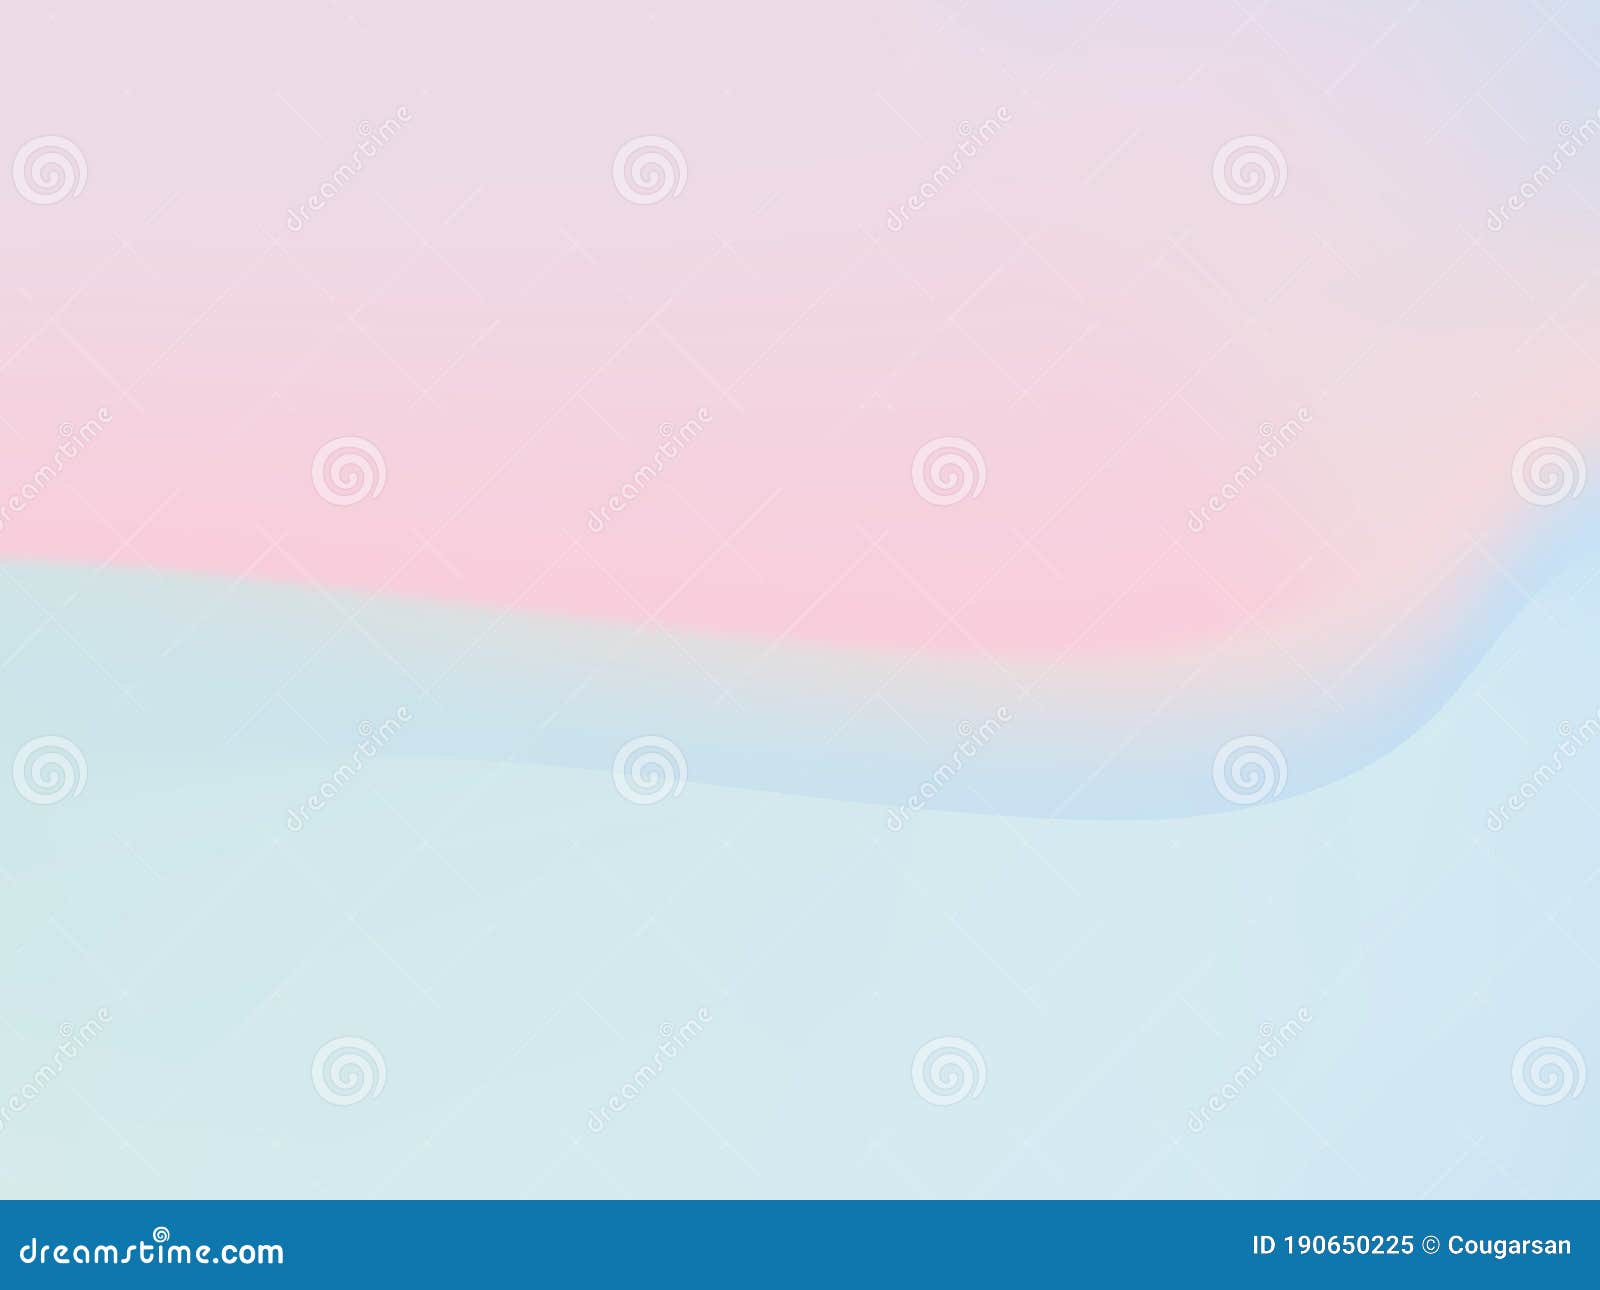 Fondo De La Plantilla De Banners Color Rosa Azul Pastel Ilustración del  Vector - Ilustración de concepto, holograma: 190650225